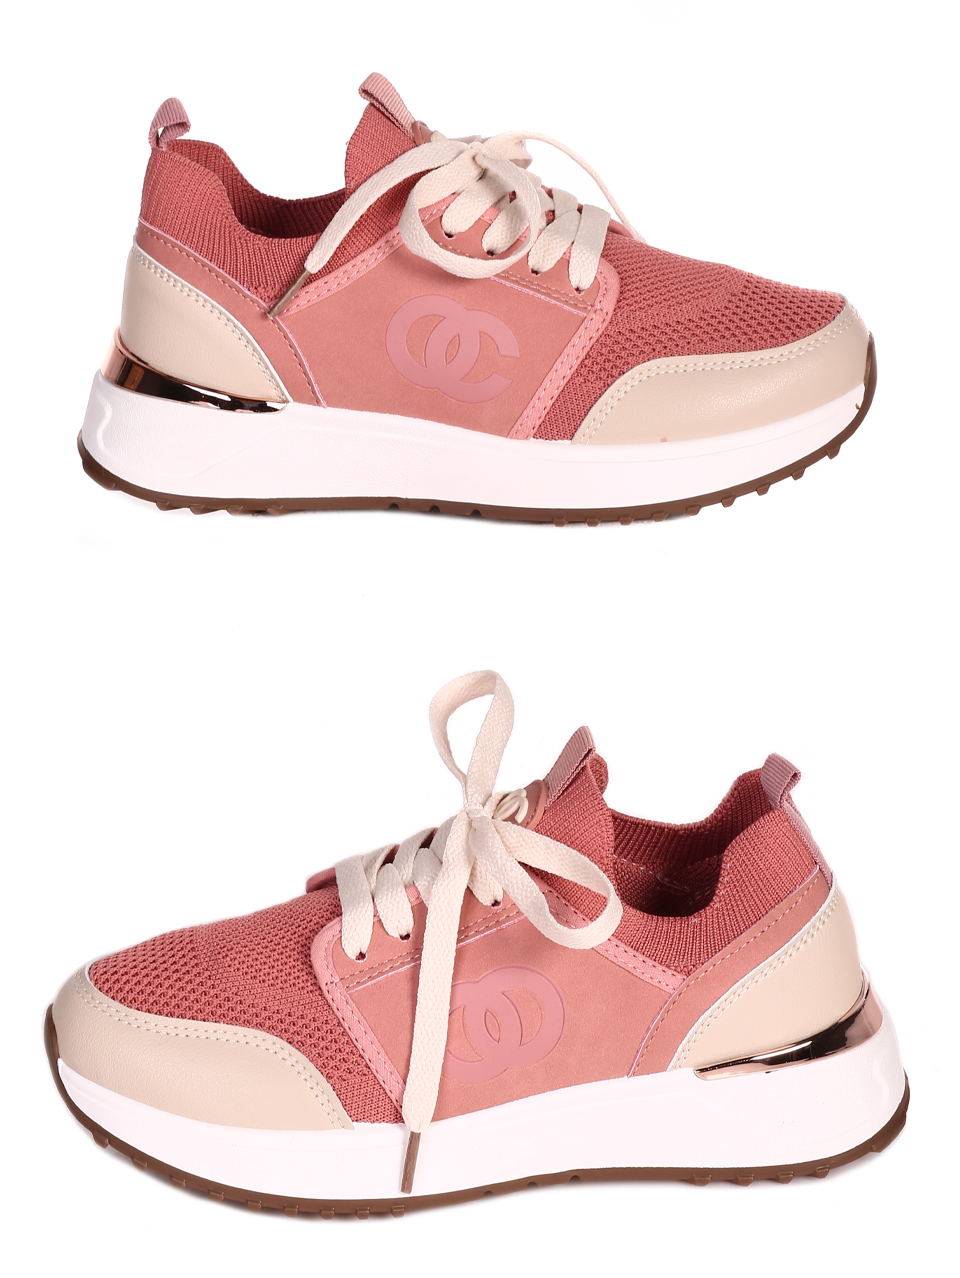 Ежедневни дамски комфортни обувки в розово 3U-23206 pink